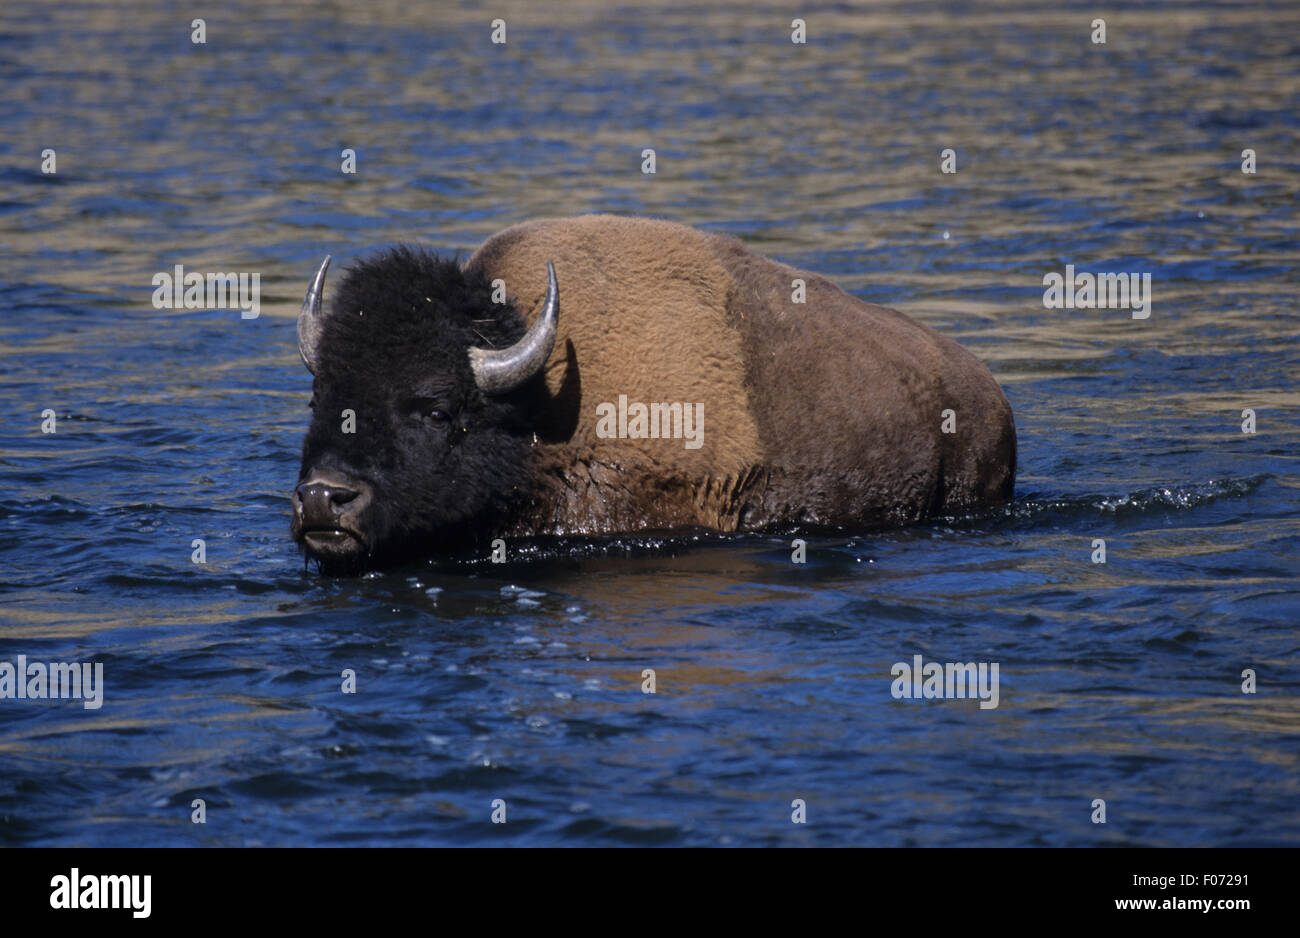 Prises dans le bison à pied profil gauche à travers l'eau d'un bleu profond Banque D'Images